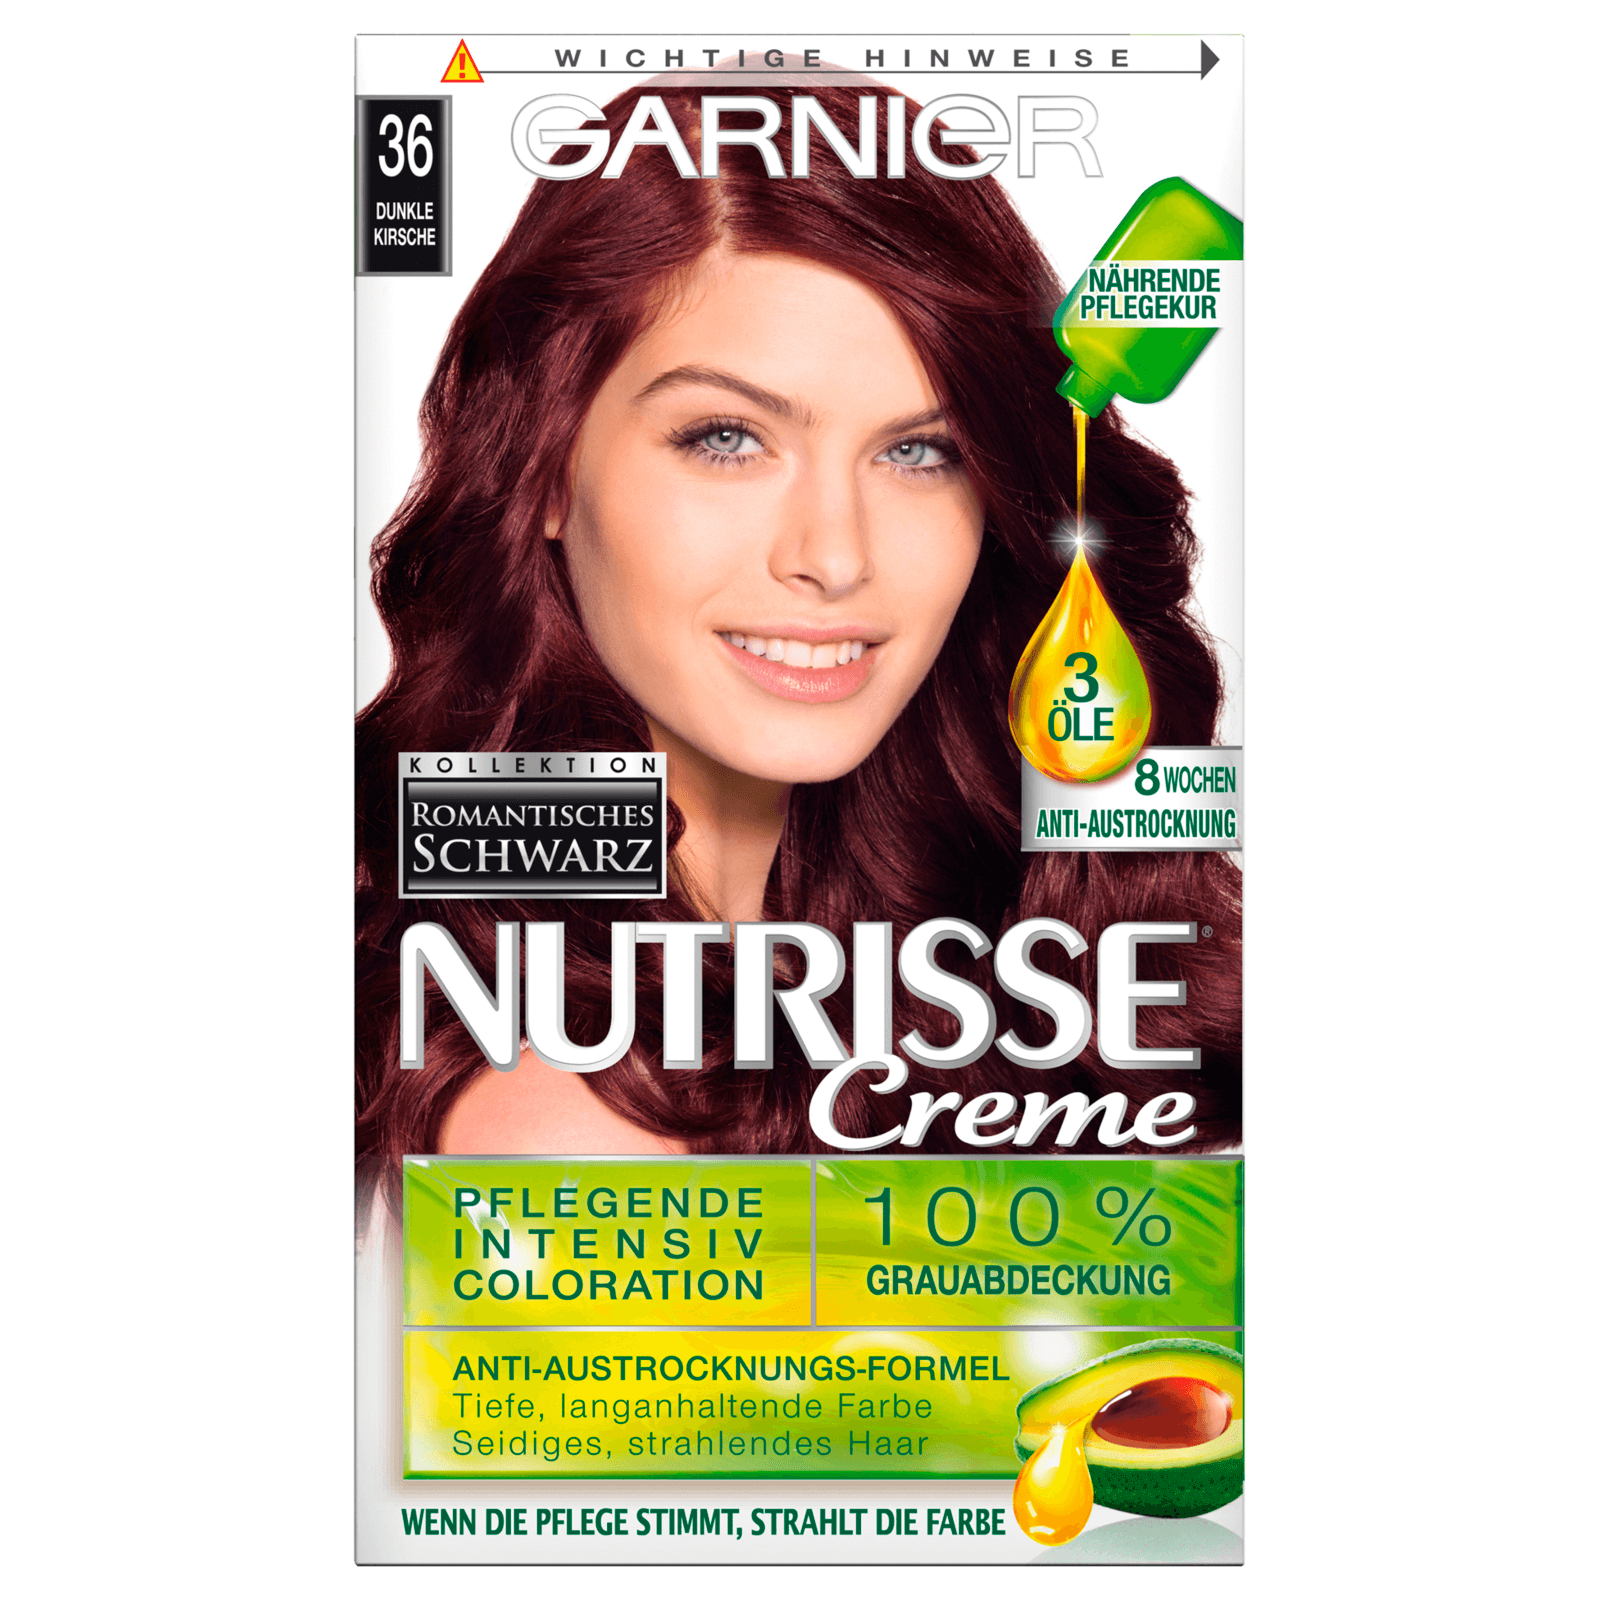 40+ Haarfarbe dunkle kirsche bilder , Garnier Nutrisse Romantisches Schwarz 36 Dunkle Kirsche bei REWE online